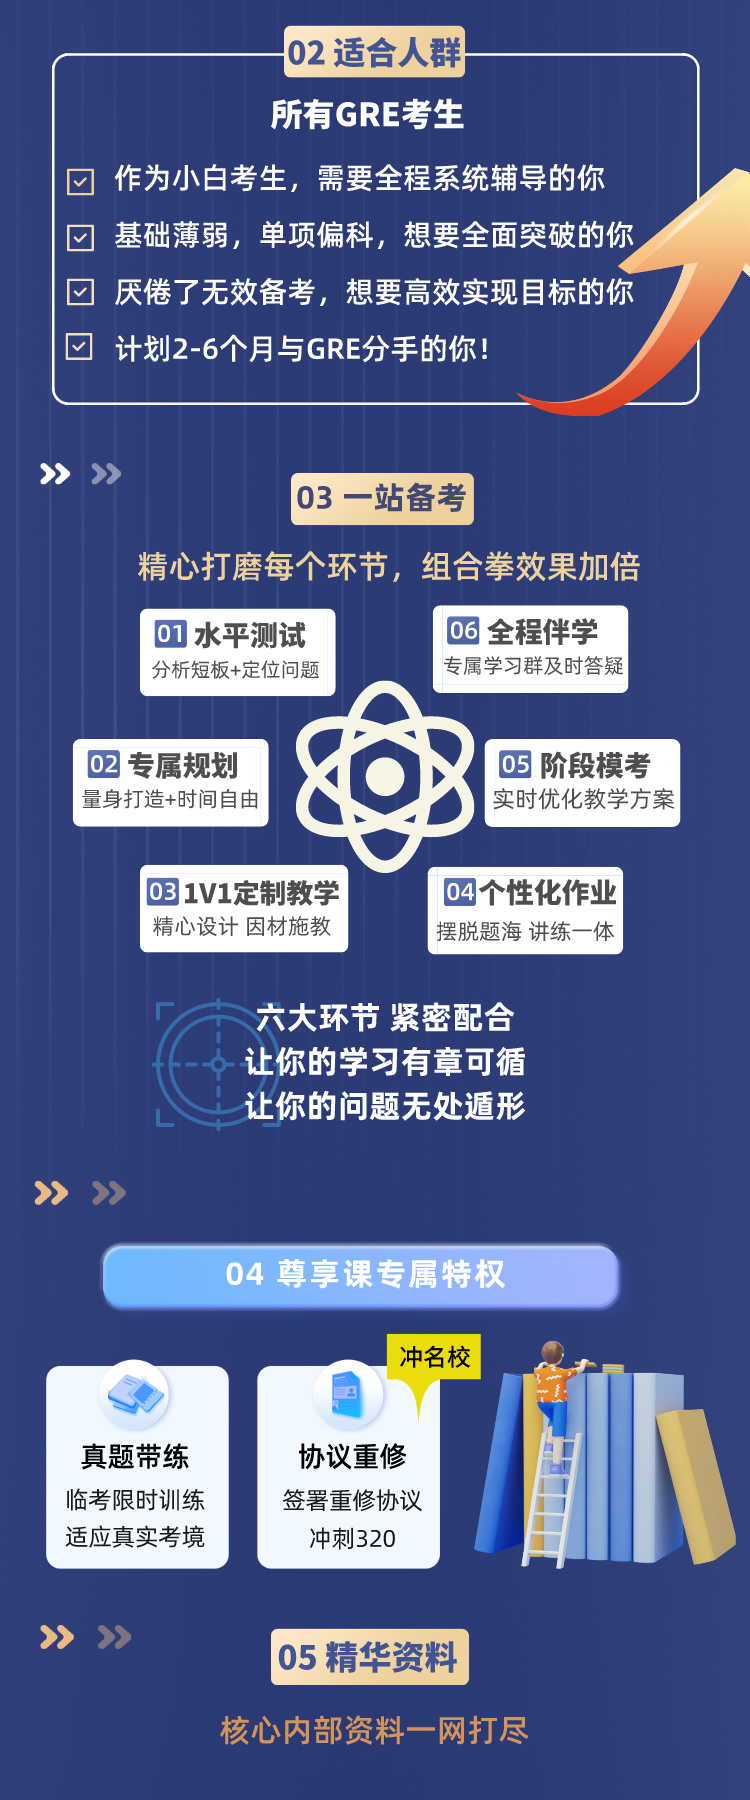 https://simg01.gaodunwangxiao.com/uploadfiles/product-center/202403/19/b6e7b_20240319172324.jpeg